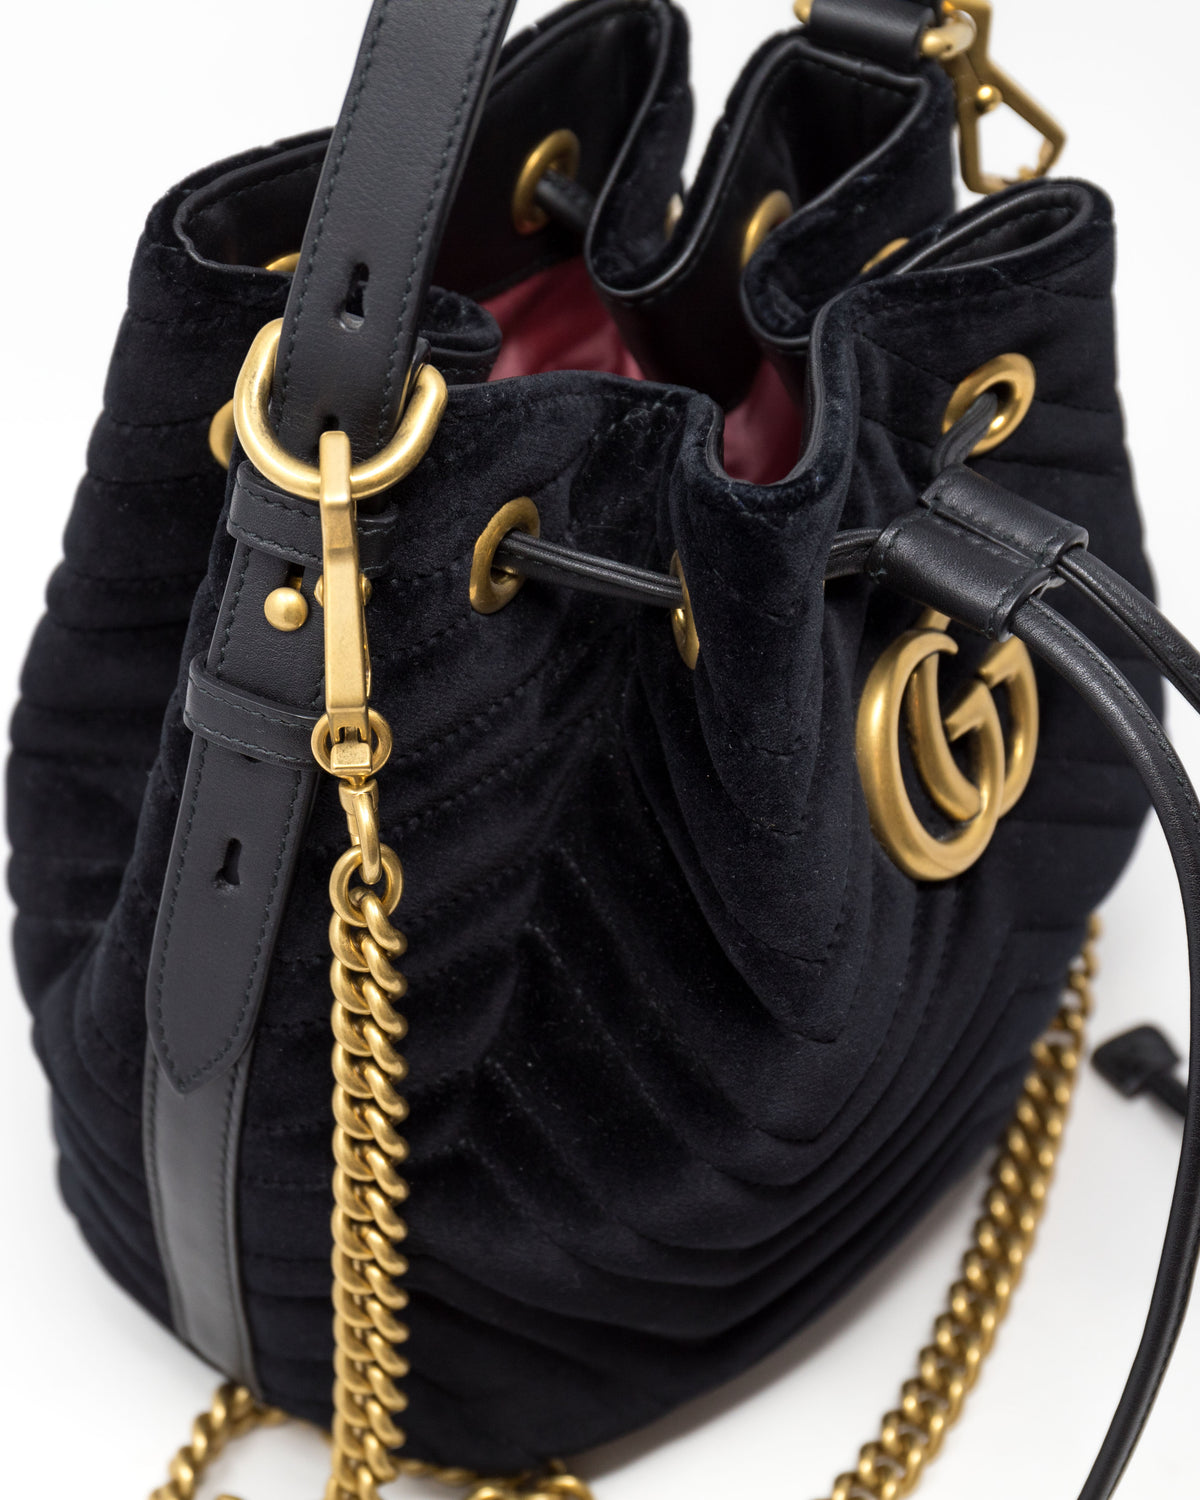 Excellent Pre-Loved Black Velvet Bucket Bag with Adjustable Top Handle and Removable Shoulder Chain.  (details)